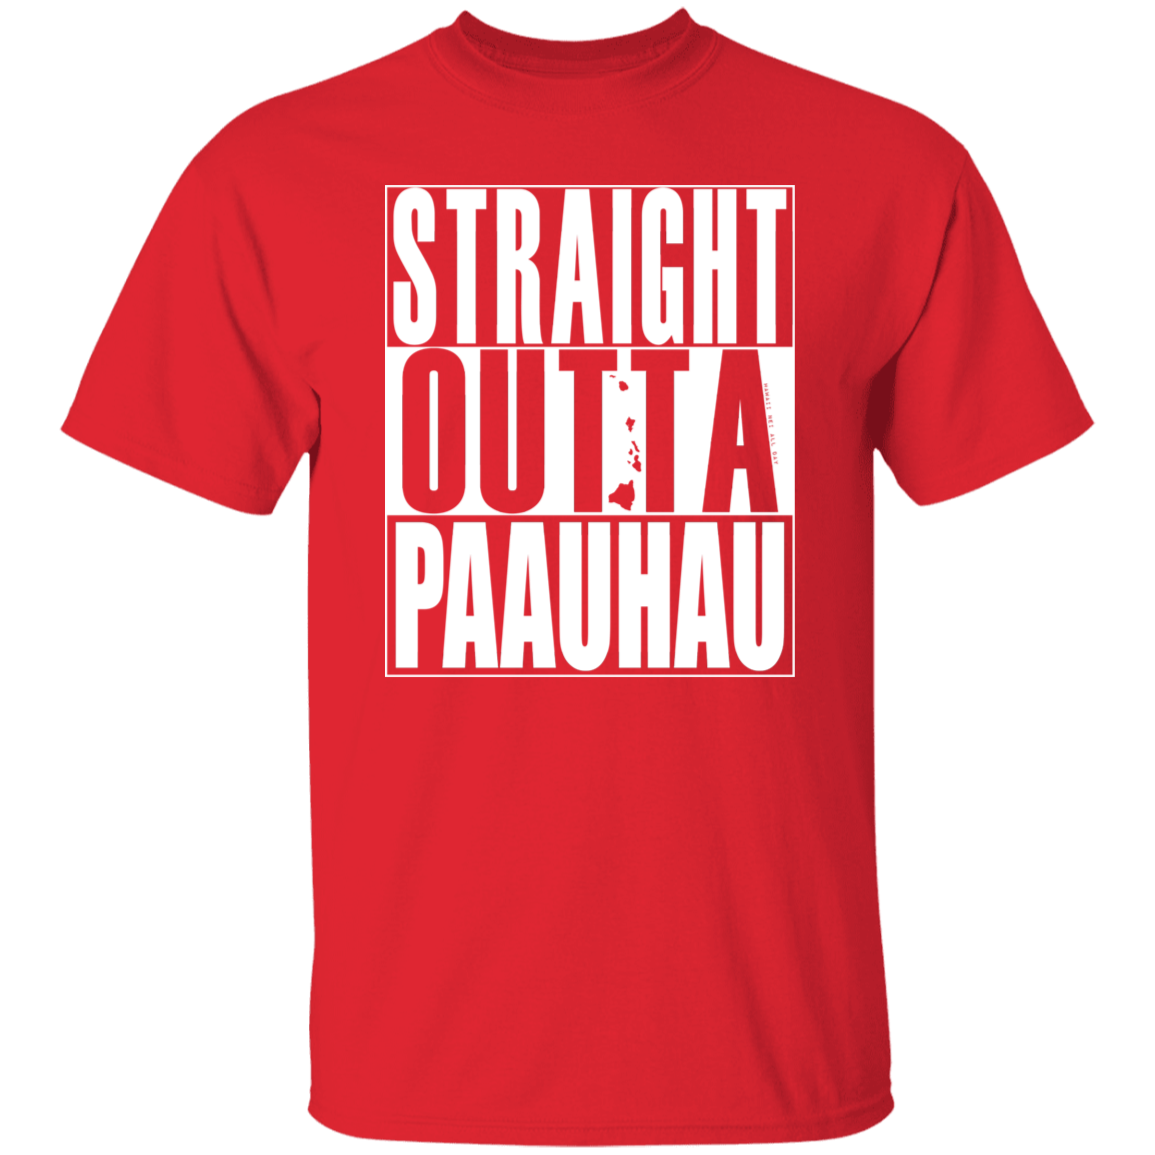 Straight Outta Paauhau (white ink) T-Shirt